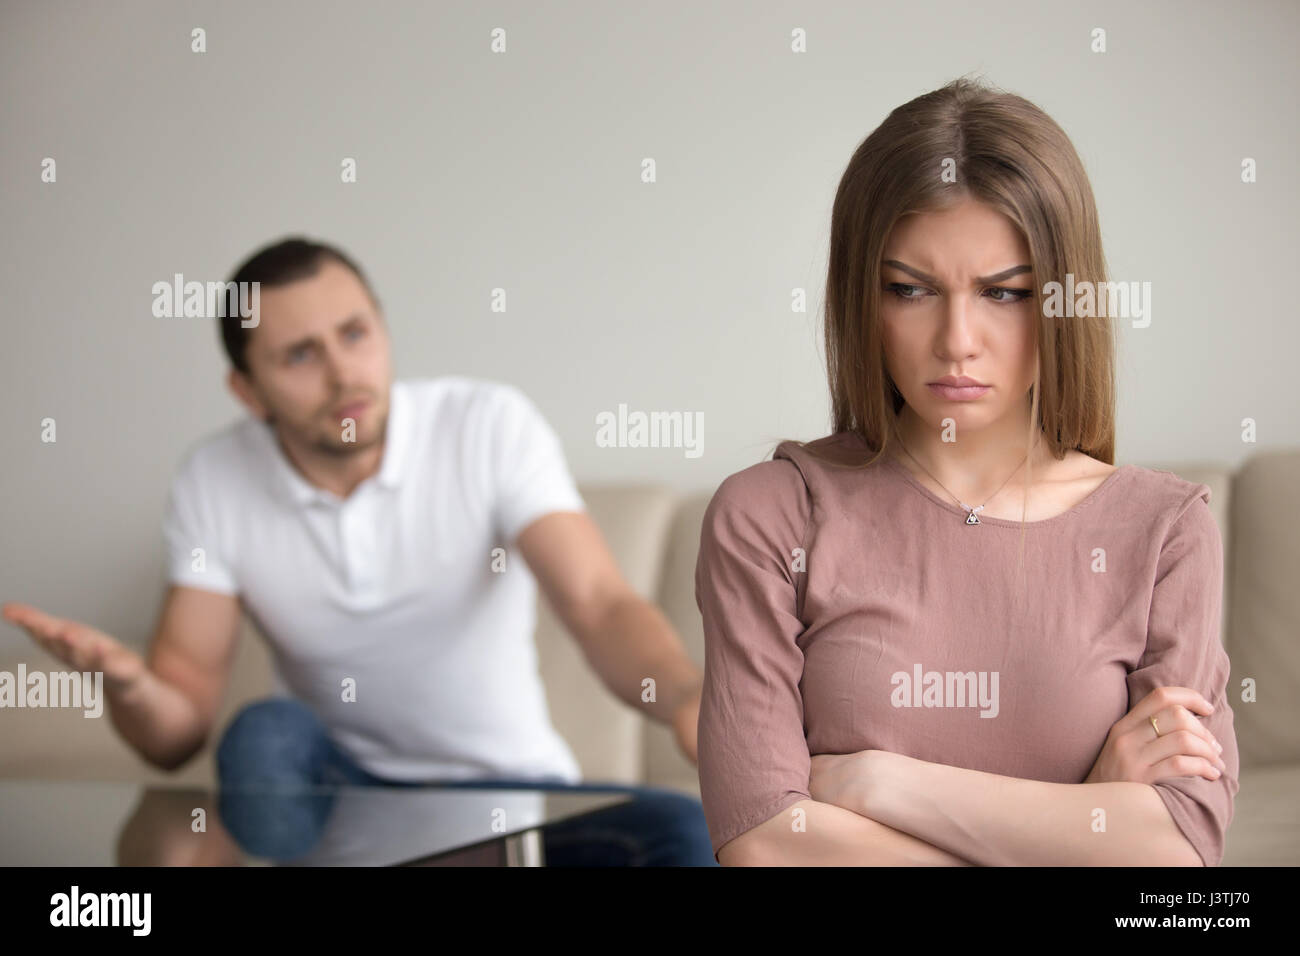 Böse Mann wütend auf Frau, unglücklich, frustriert, Frau, Familie conf Stockfoto